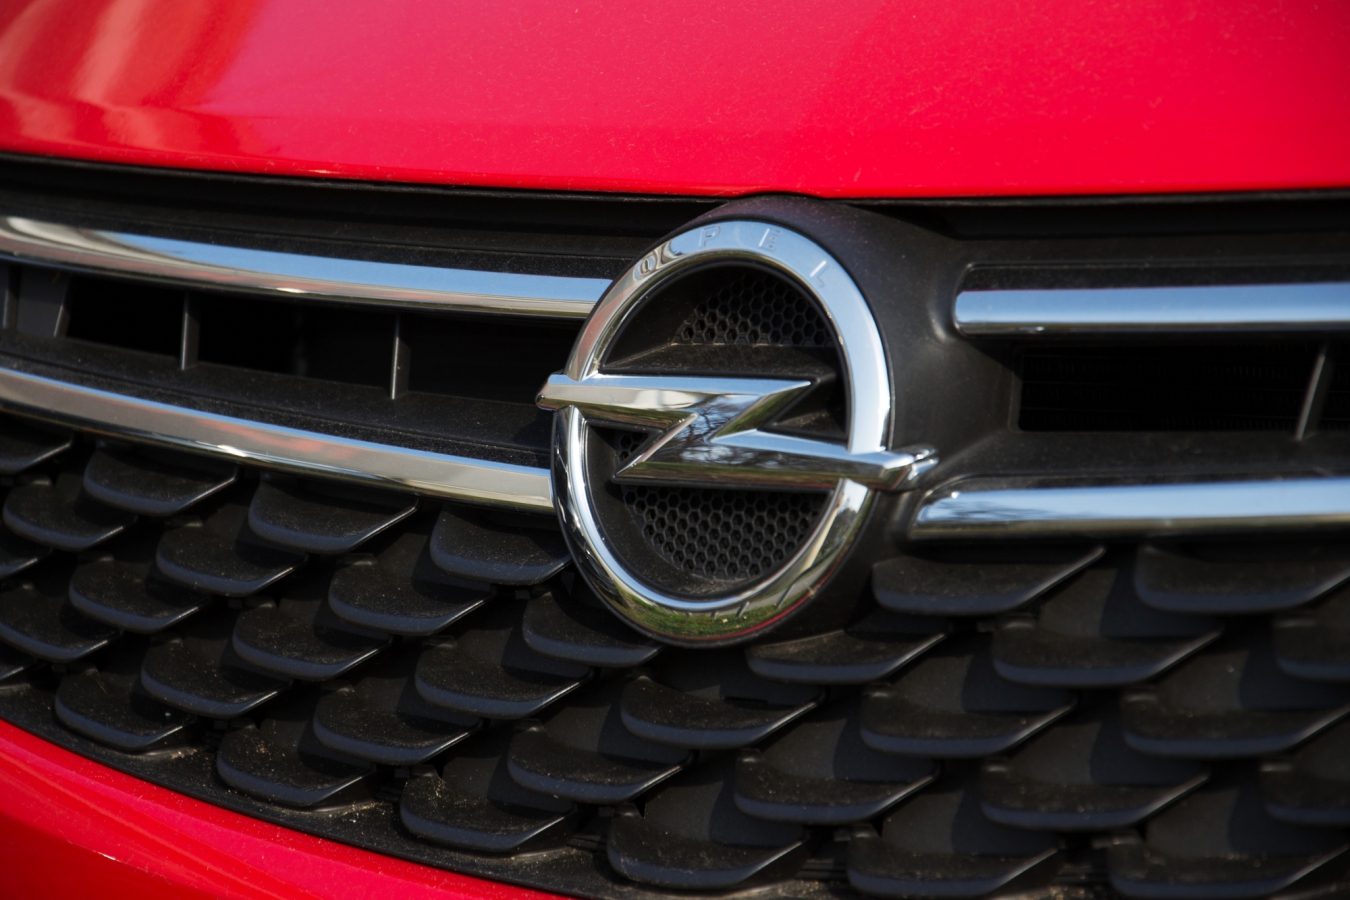 Opel rassekretil svoi plany otnositelno rynka Rossii